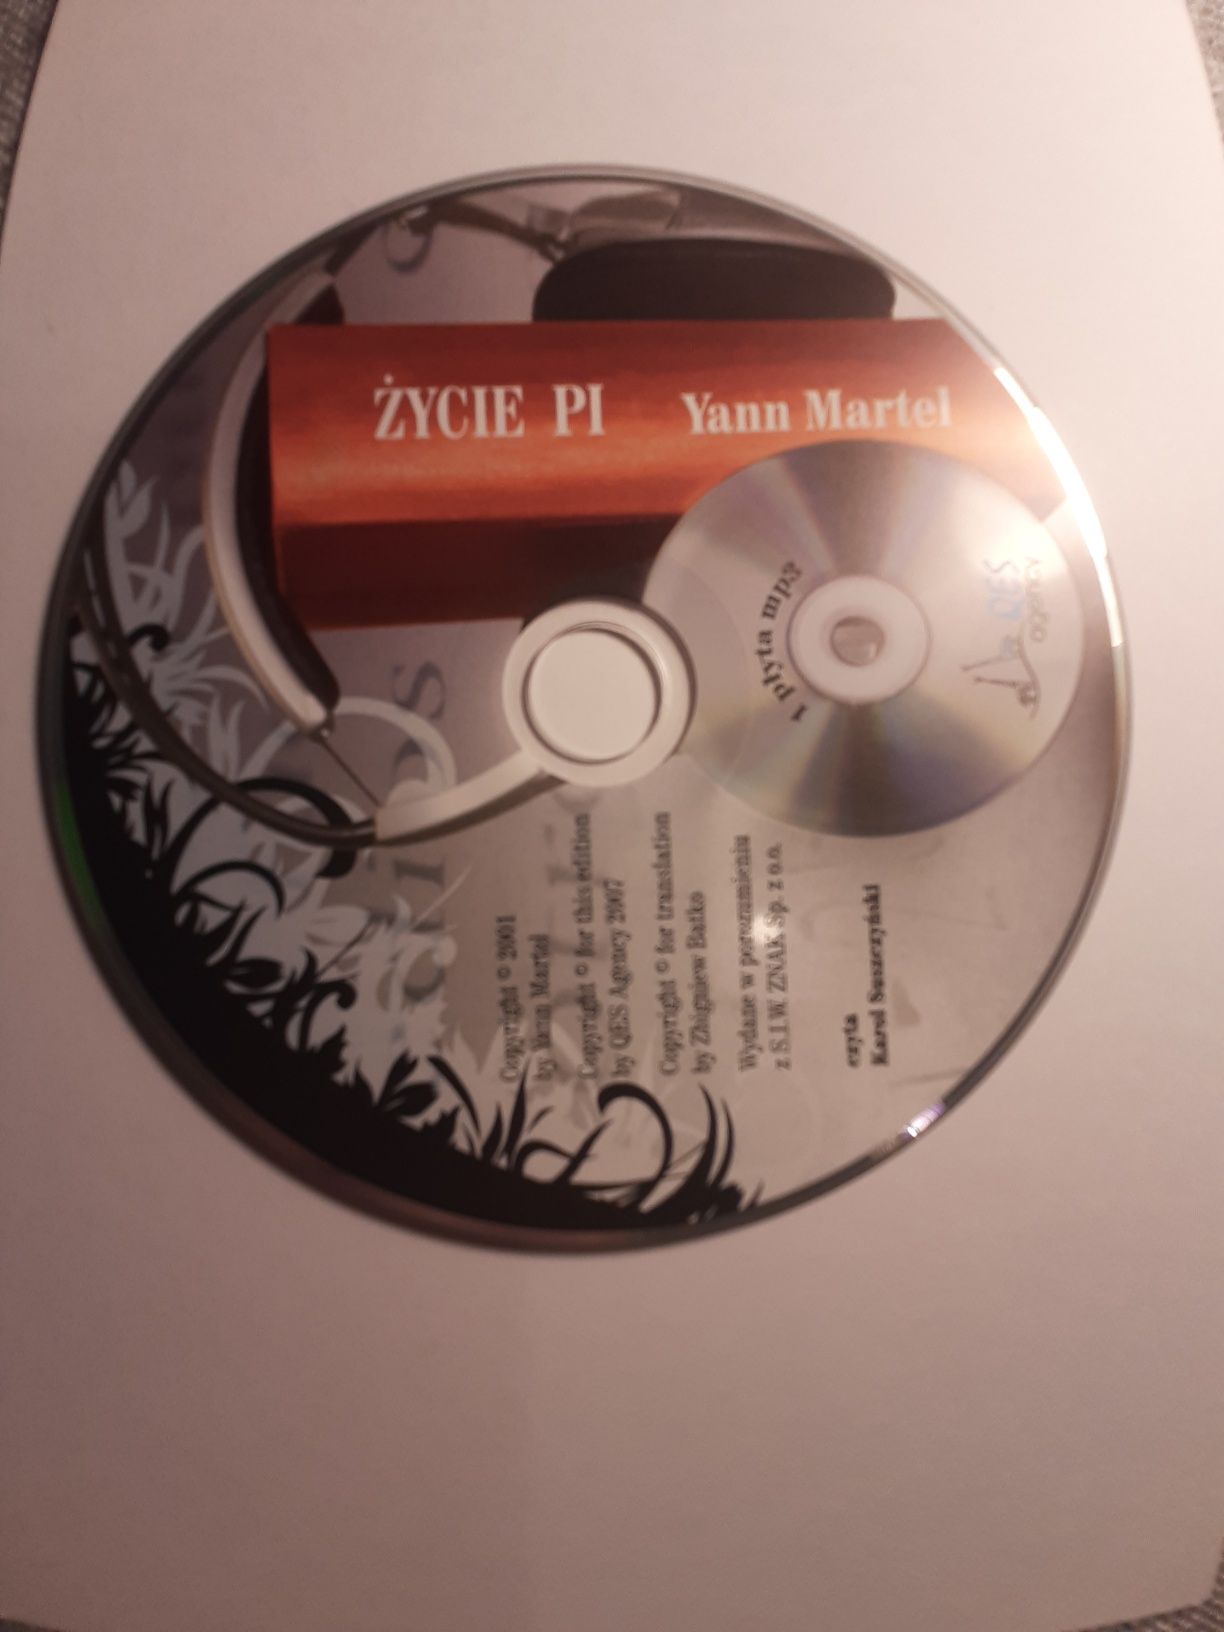 Yann Martel Žycie PI (mp3) (płyta bez pudełka)